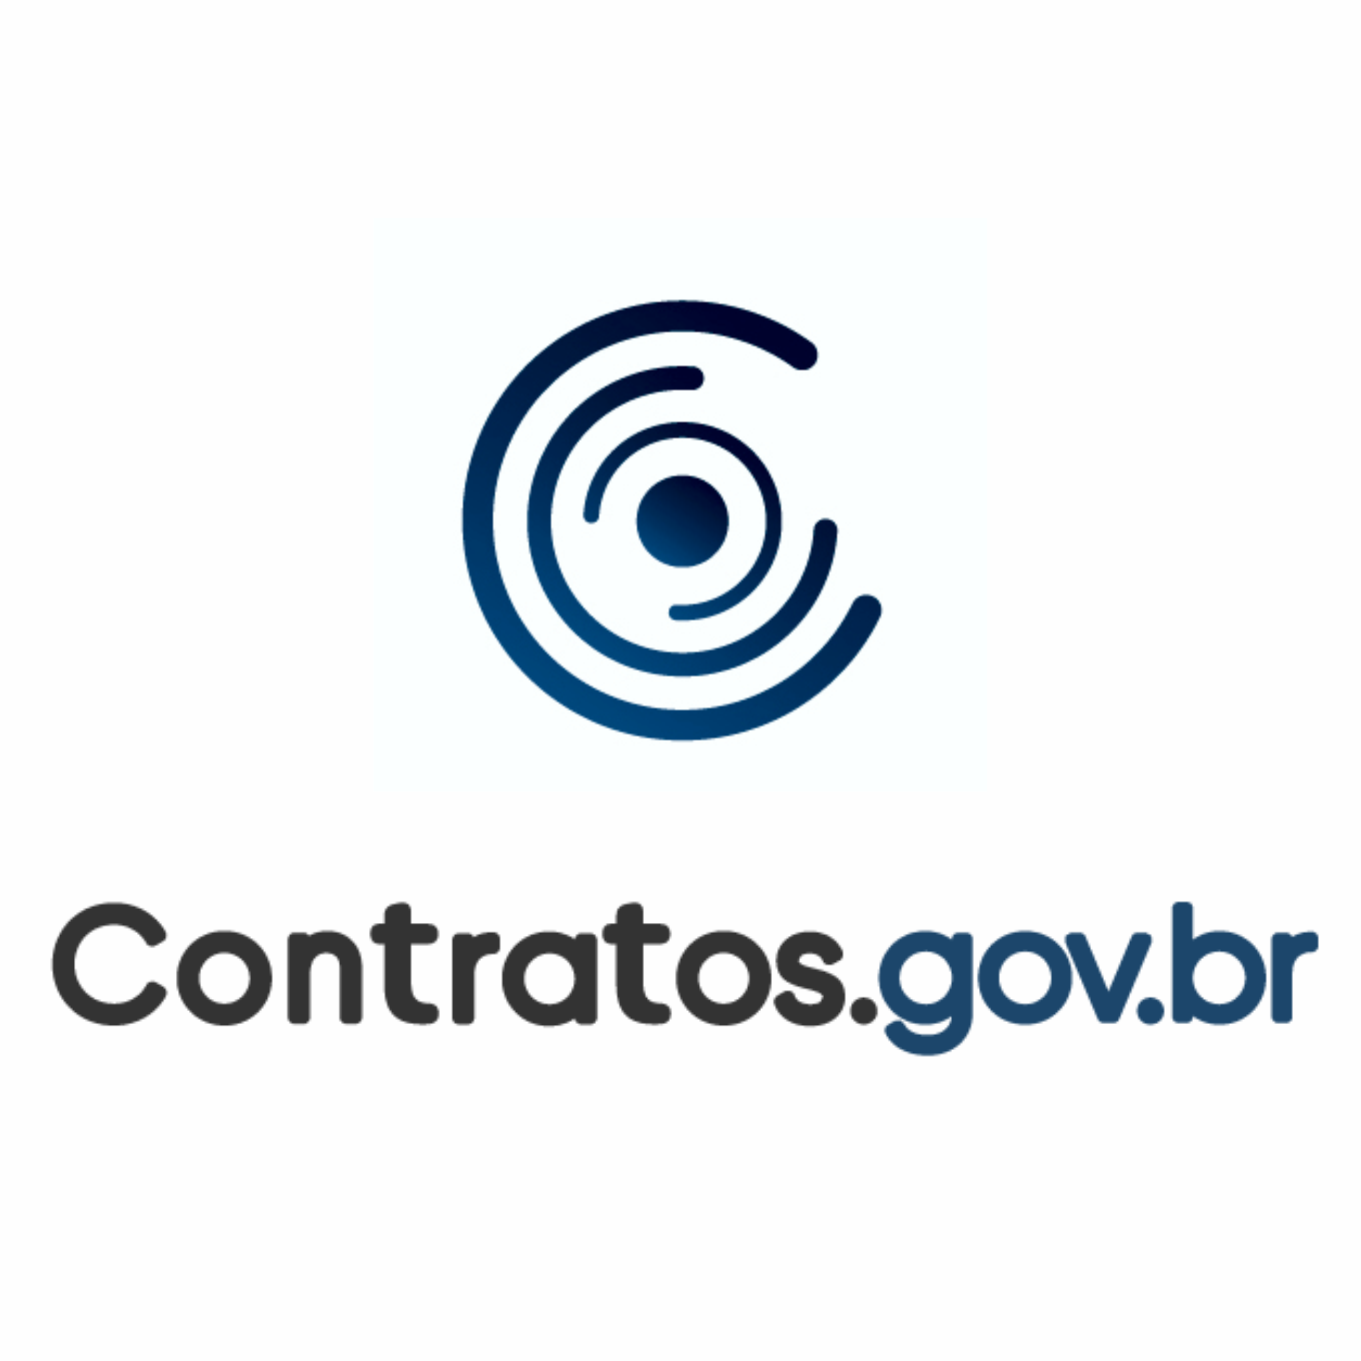 Treinamento Contratos.gov.br - TRT10